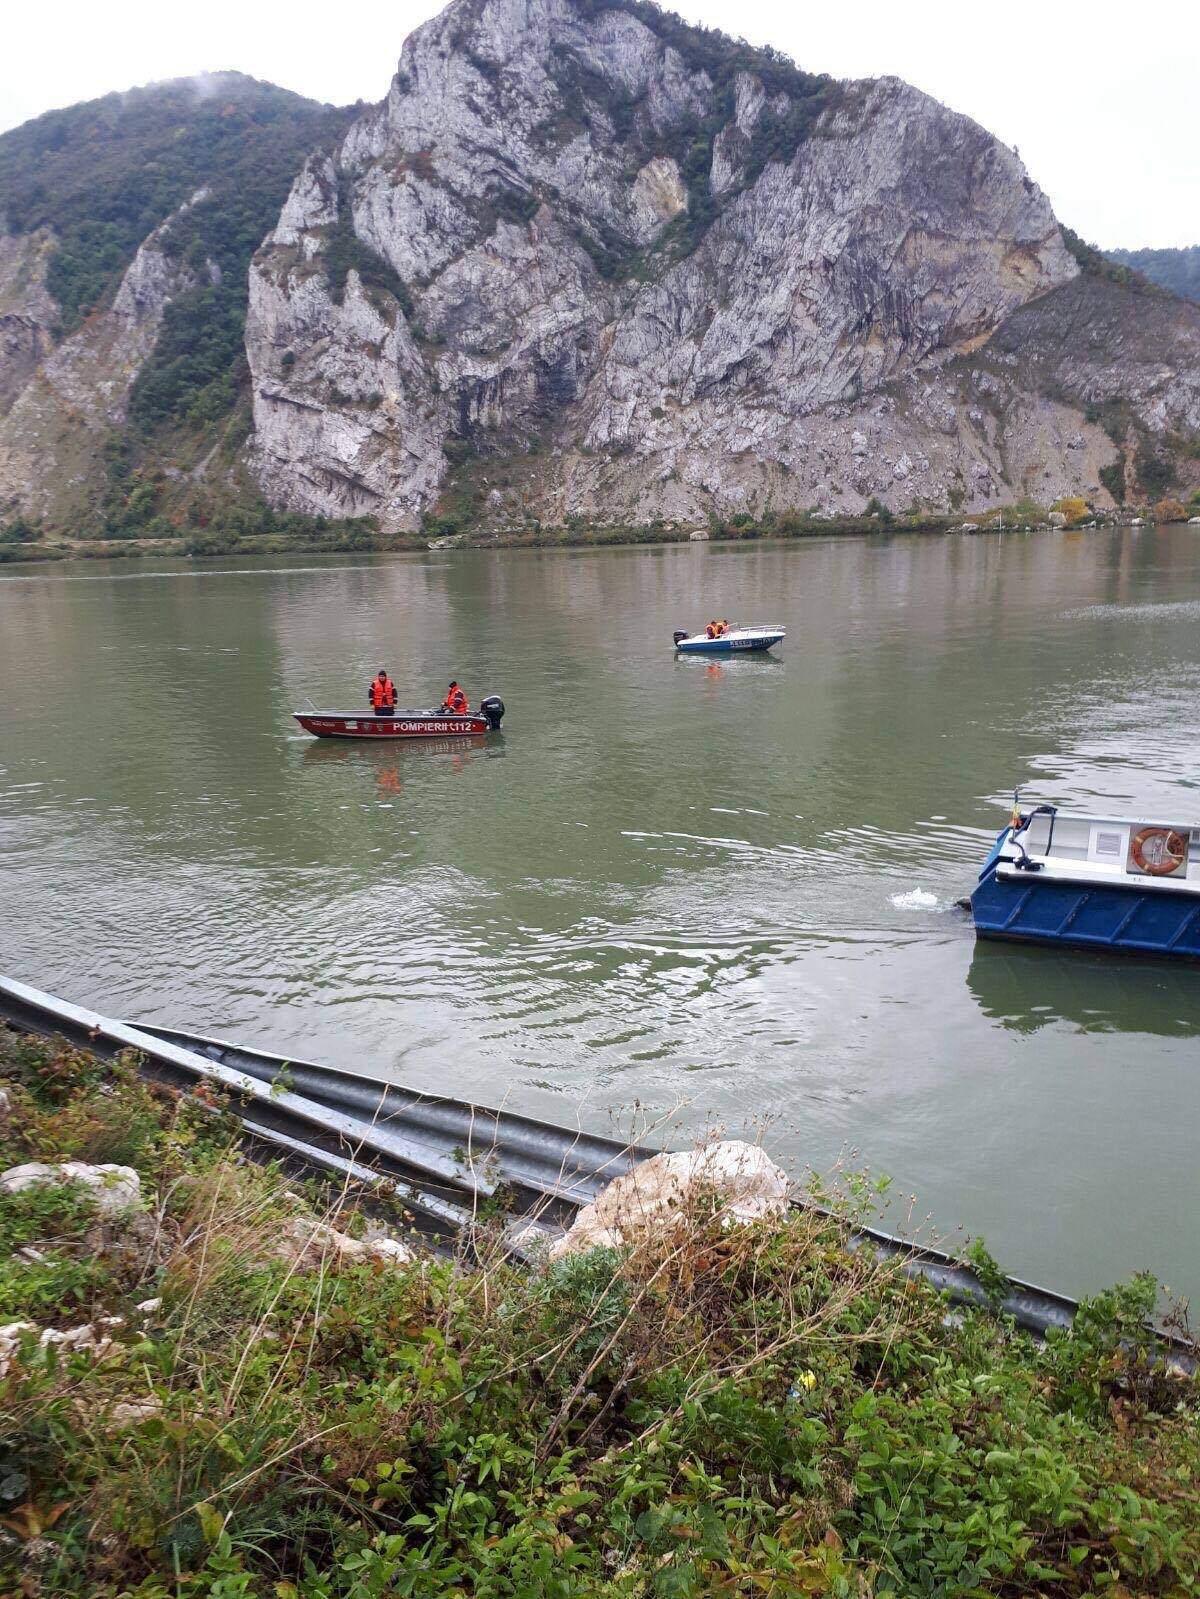 Imagini dramatice! Tragedie la Coronini! O maşină a zburat în Dunăre. Patru oameni s-ar fi înecat